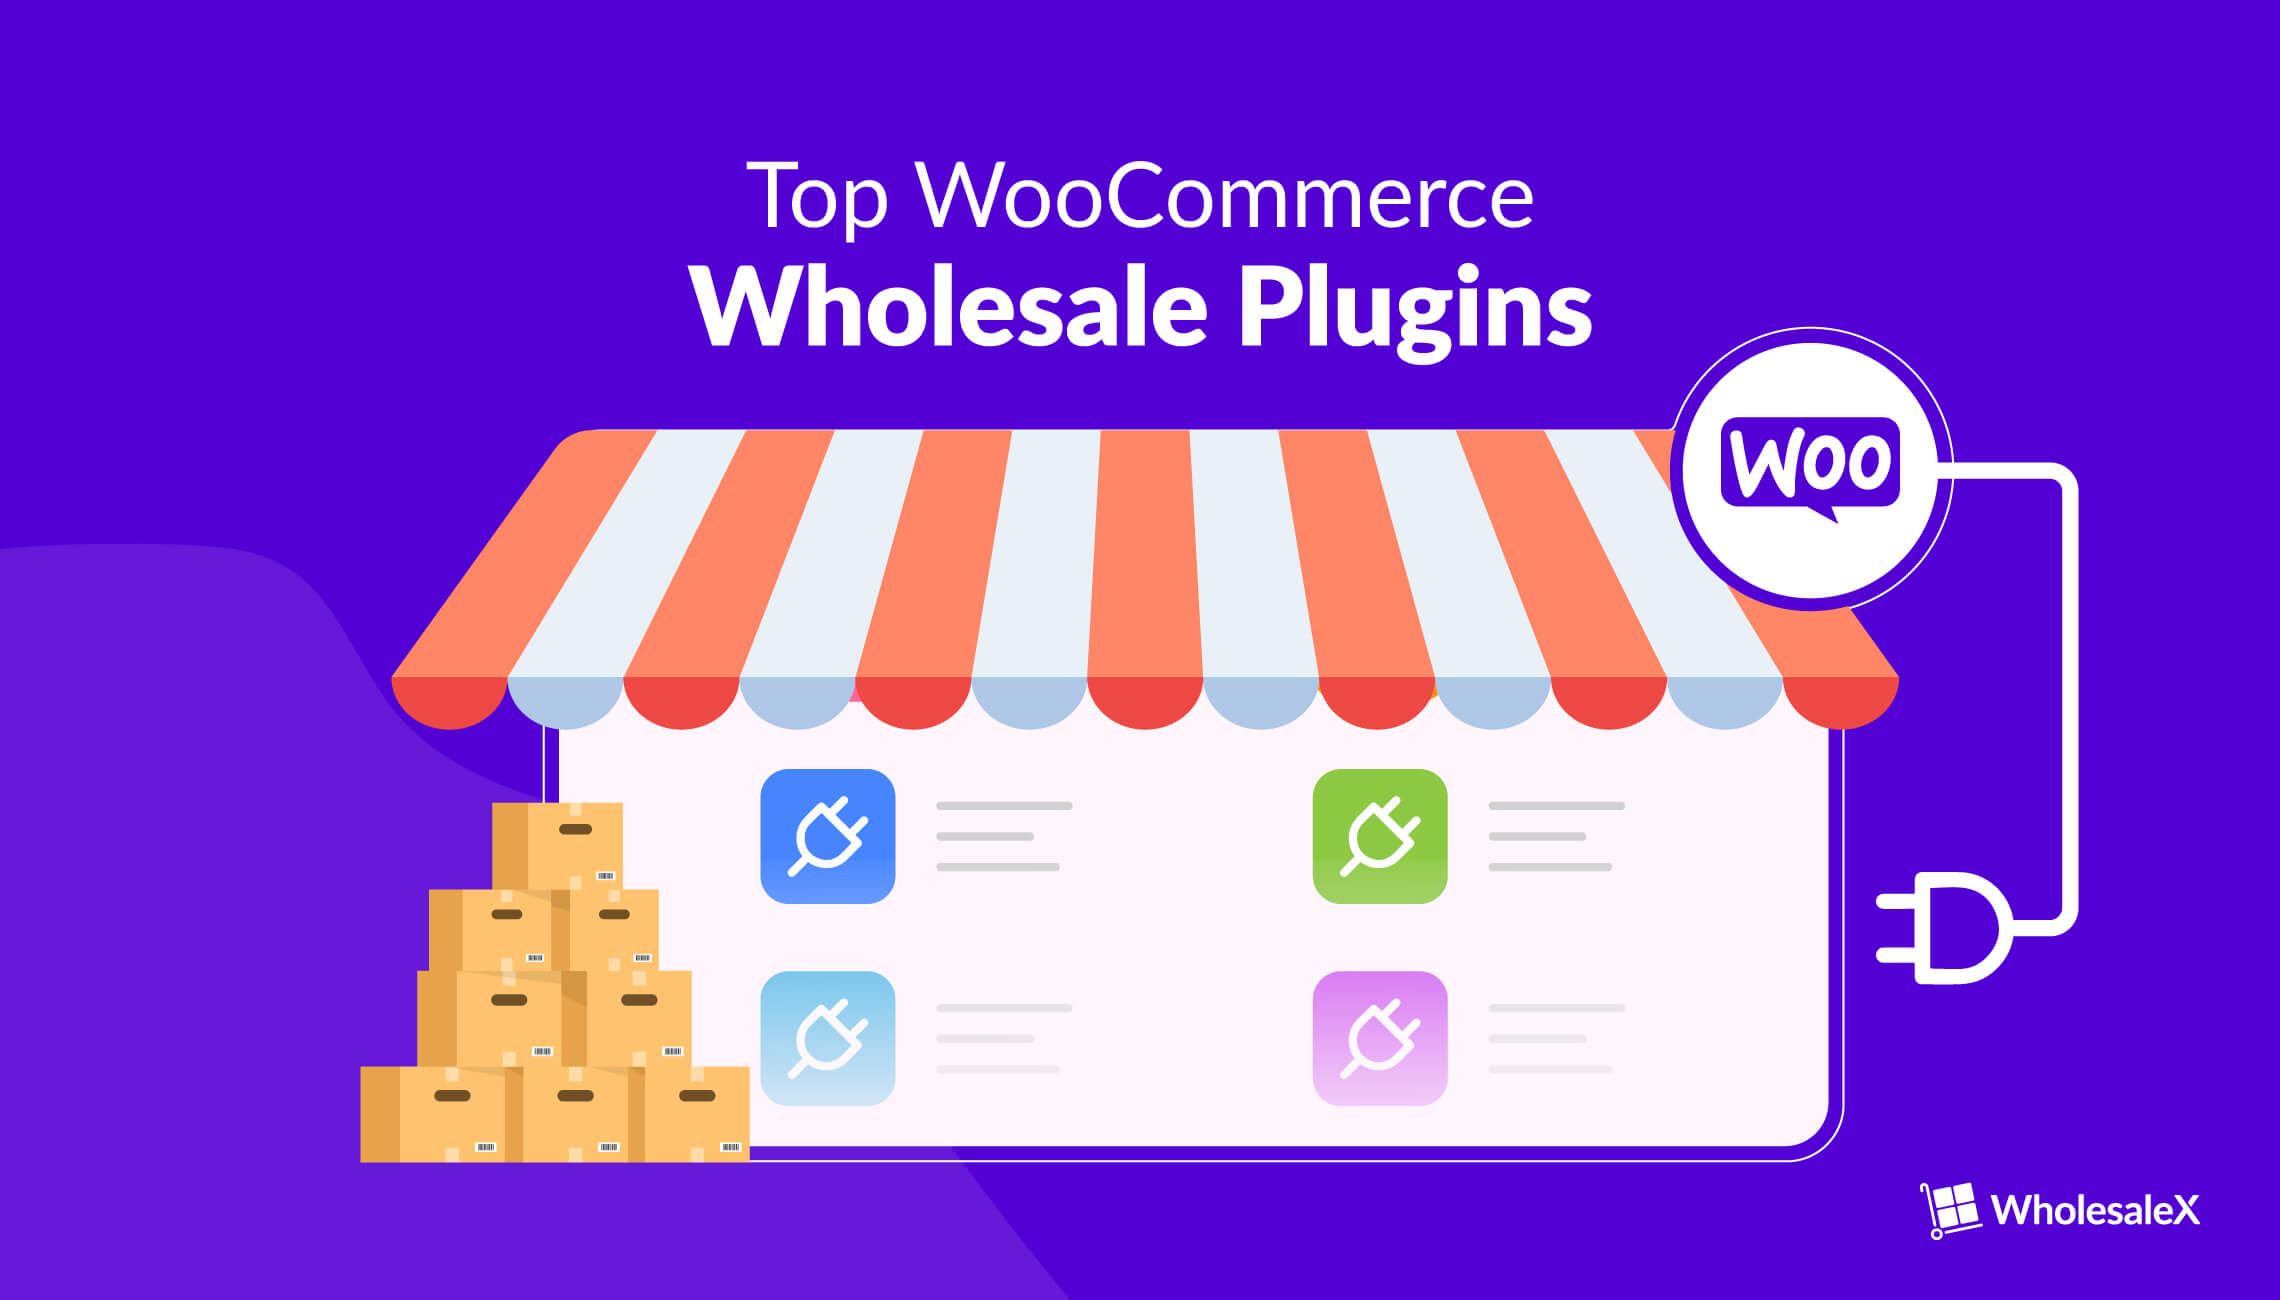 Top WooCommerce Wholesale Plugins